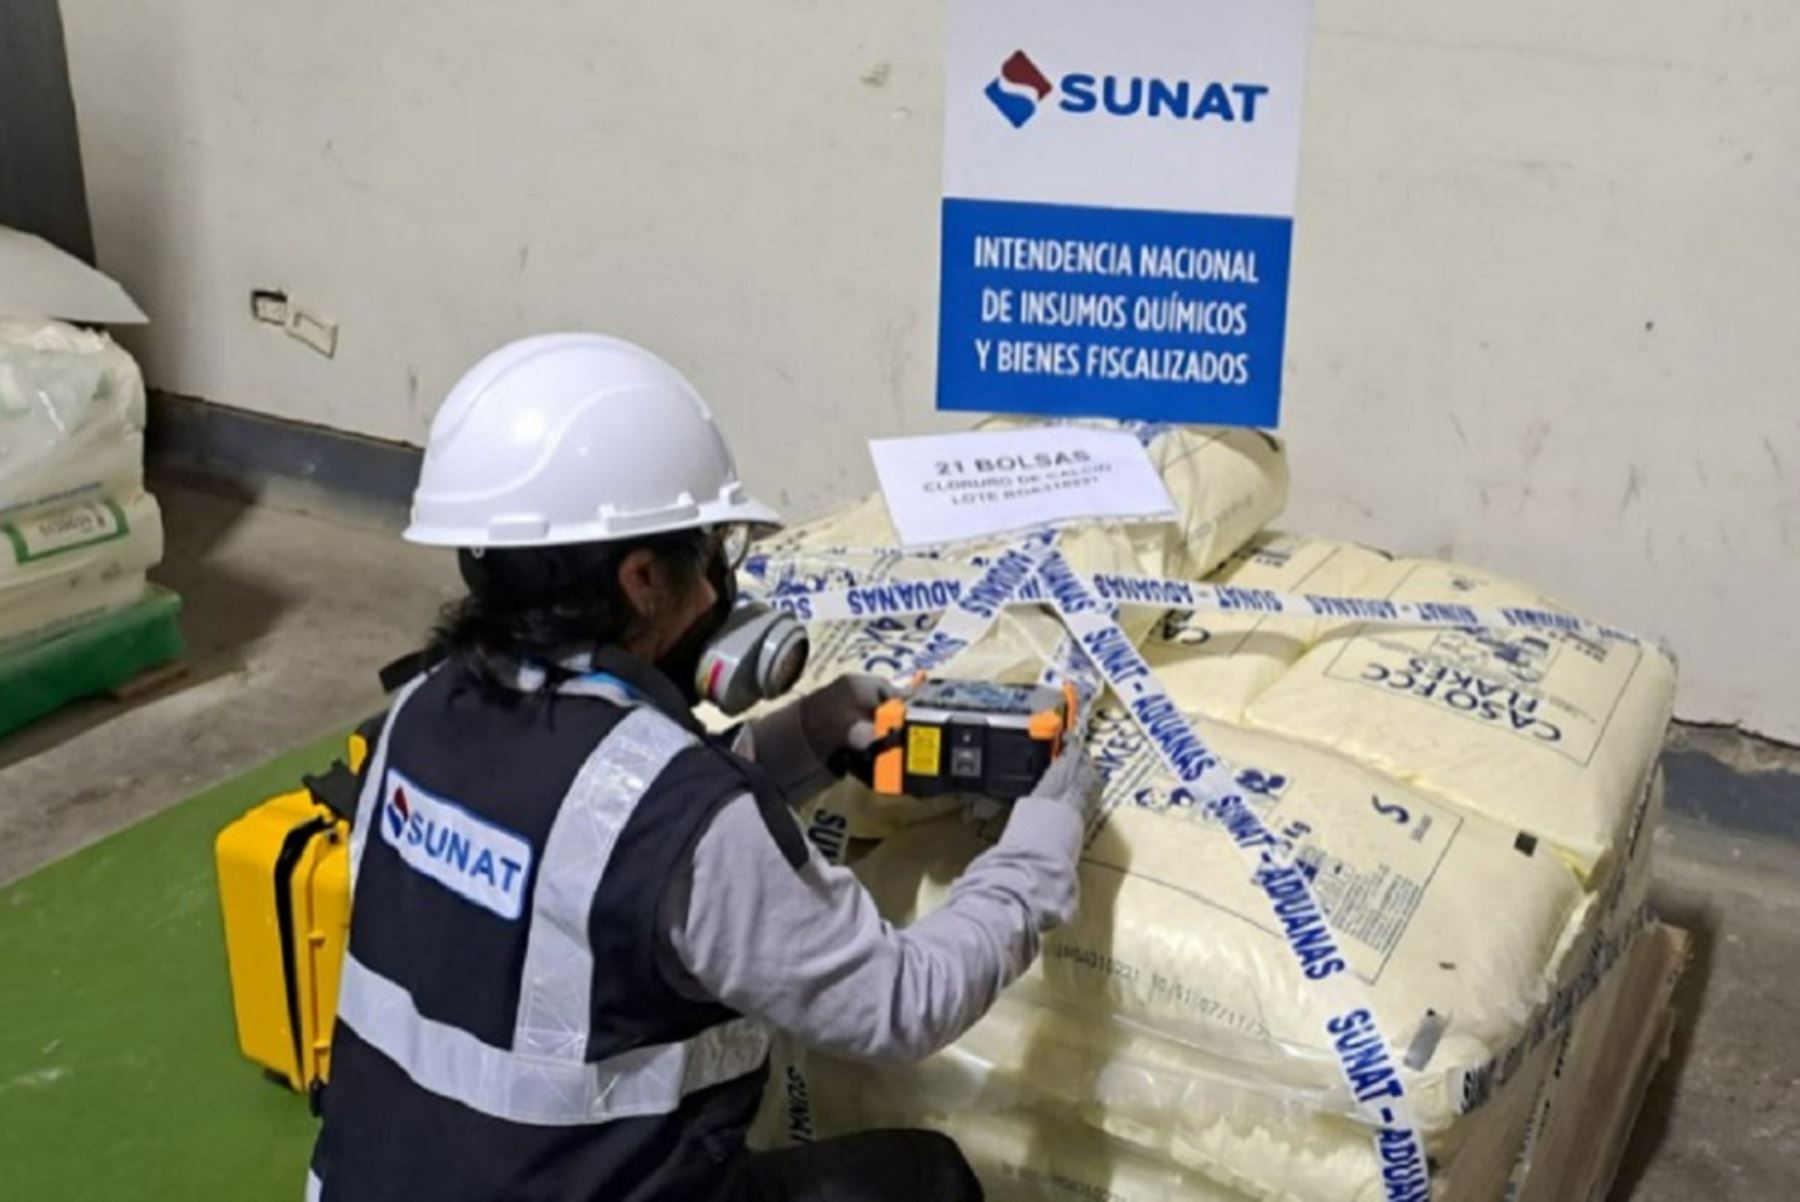 Incautación de insumos químicos fiscalizados por parte de la Sunat. Foto: Cortesía.